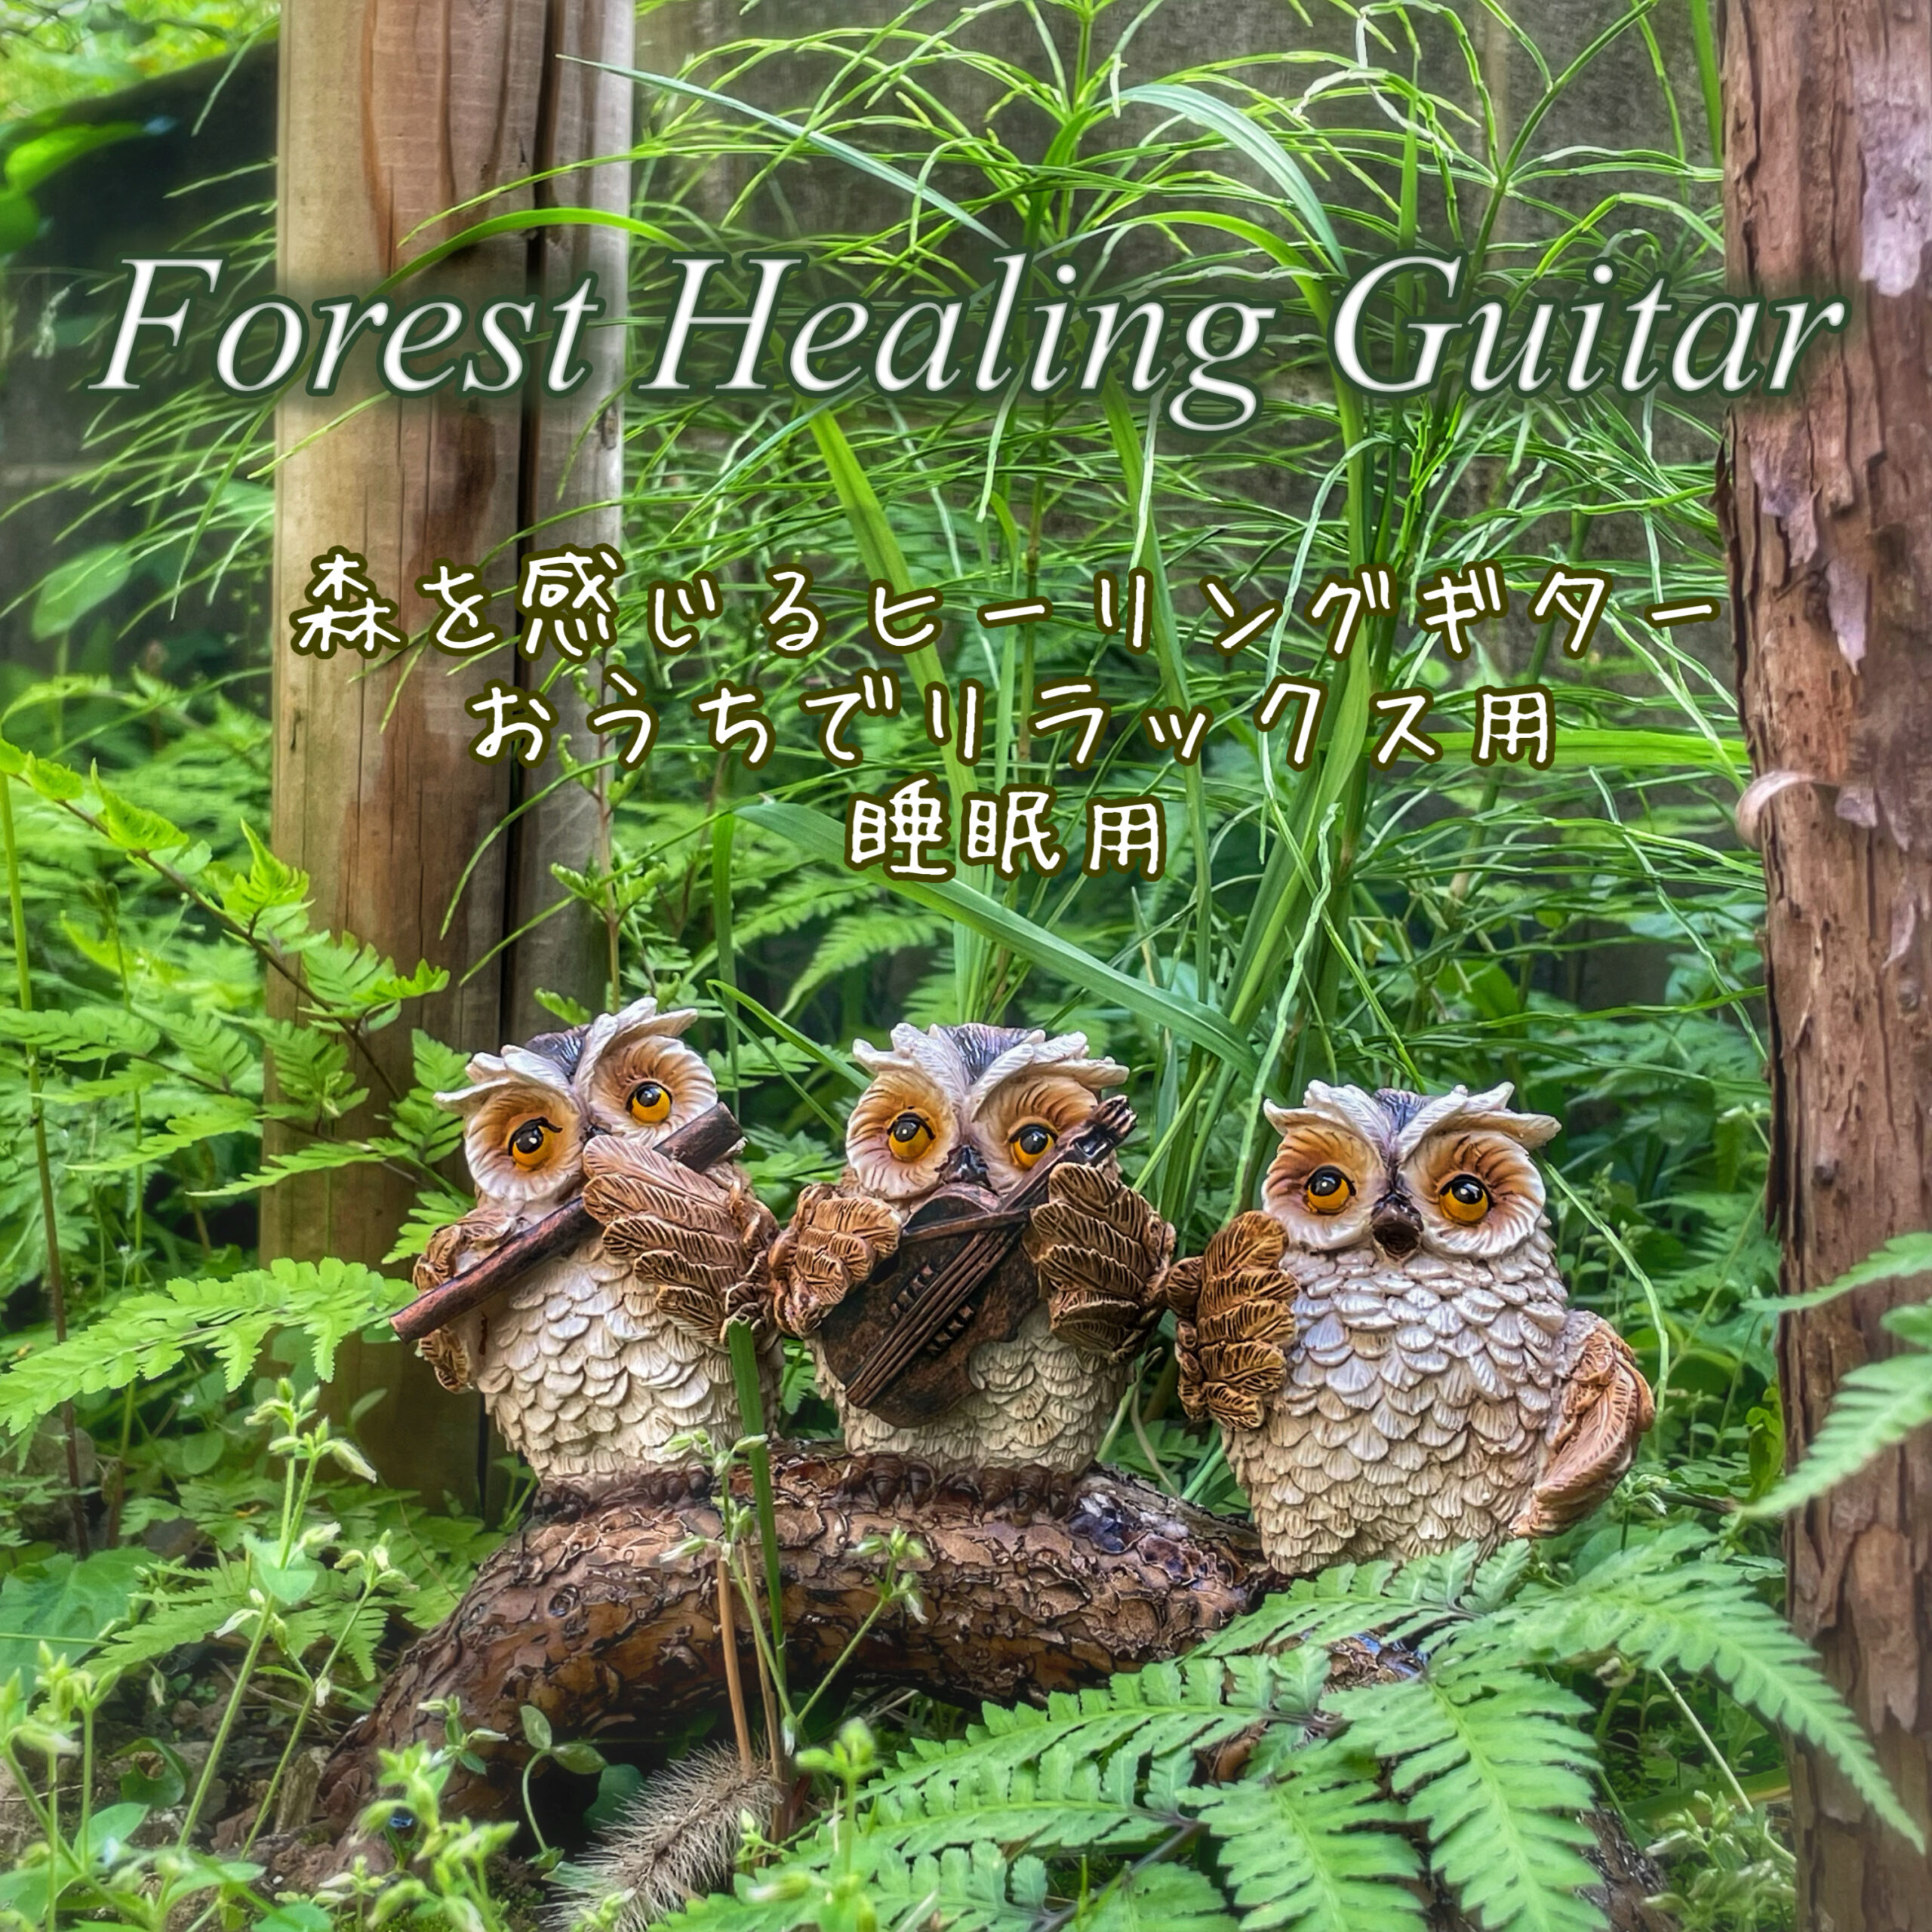 Forest Healing Guitar 森を感じる癒しのヒーリングギター おうちでリラックス用 睡眠用